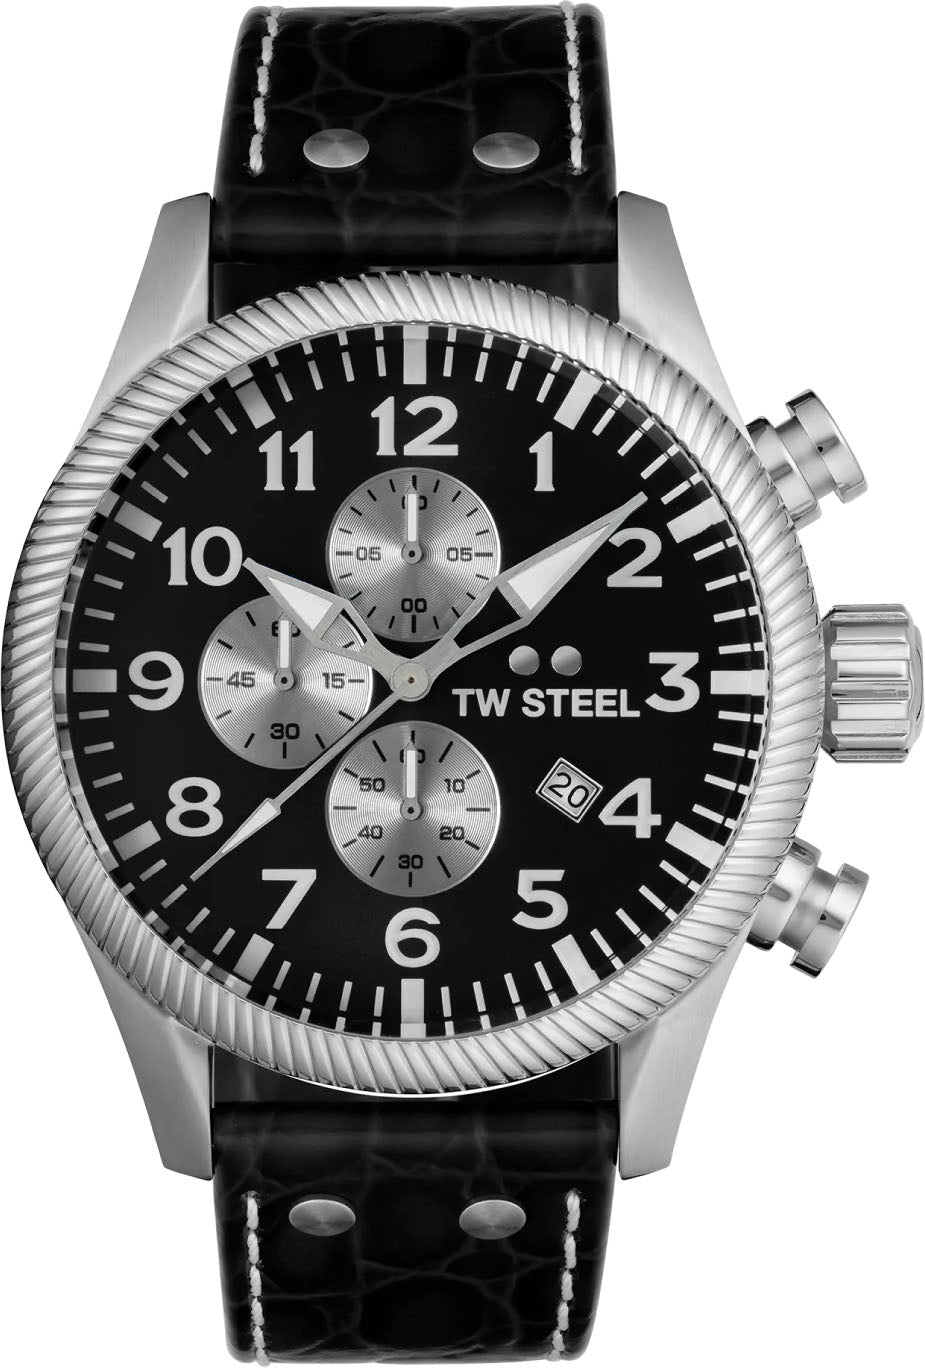 Photos - Wrist Watch TW Steel Watch Volante - Black TW-713 